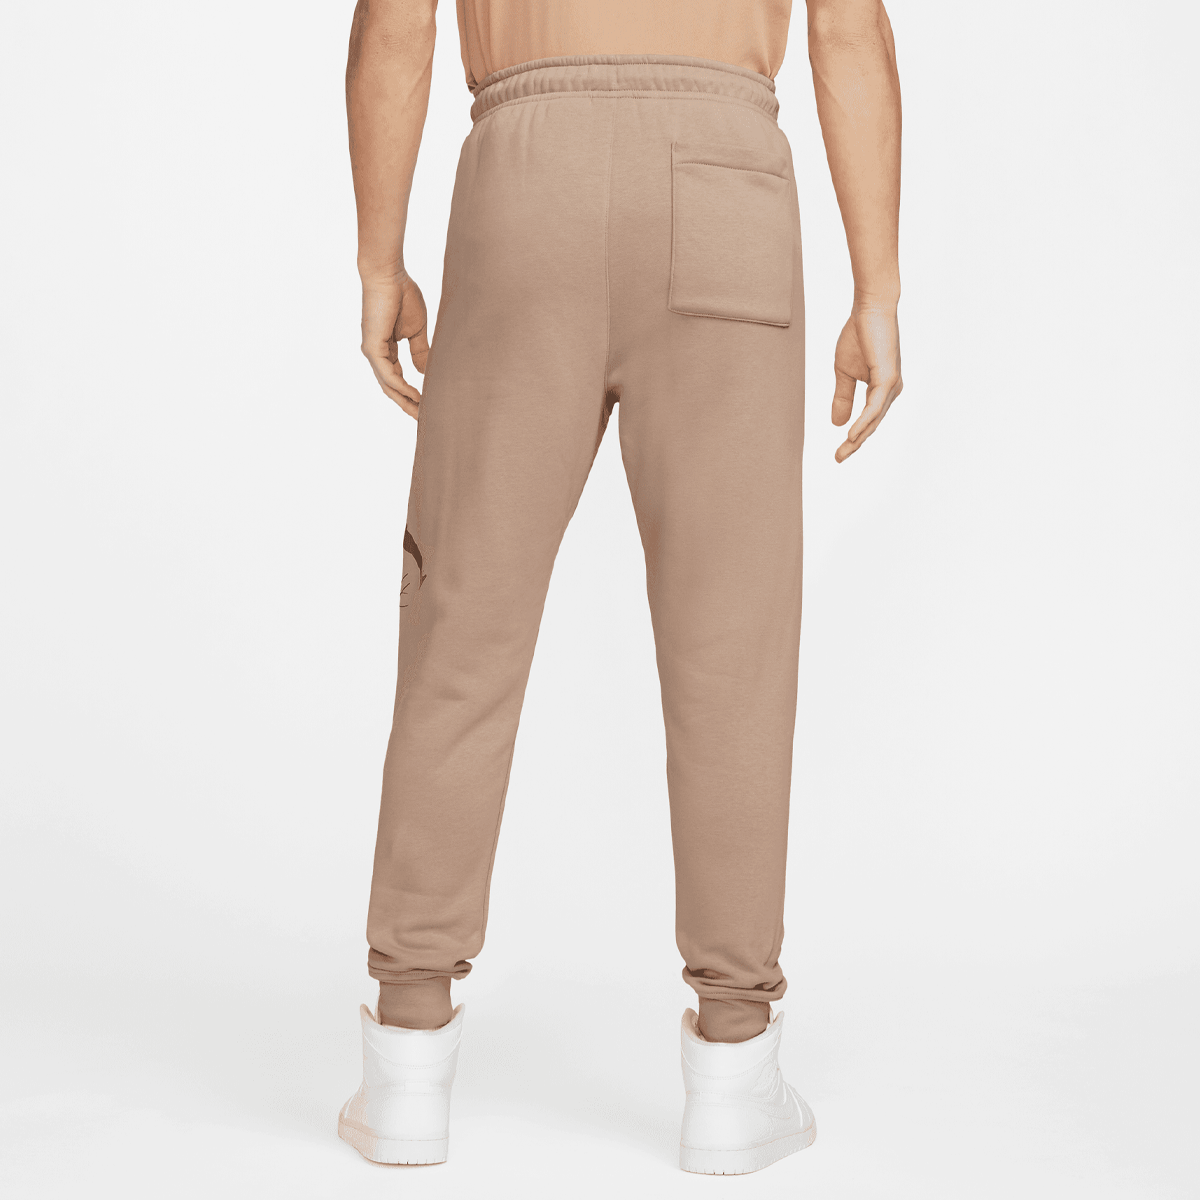 Jordan Essentials Fleece Baseline Pants Trainingsbroeken Heren hemp lt british tan maat: S beschikbare maaten:S XL